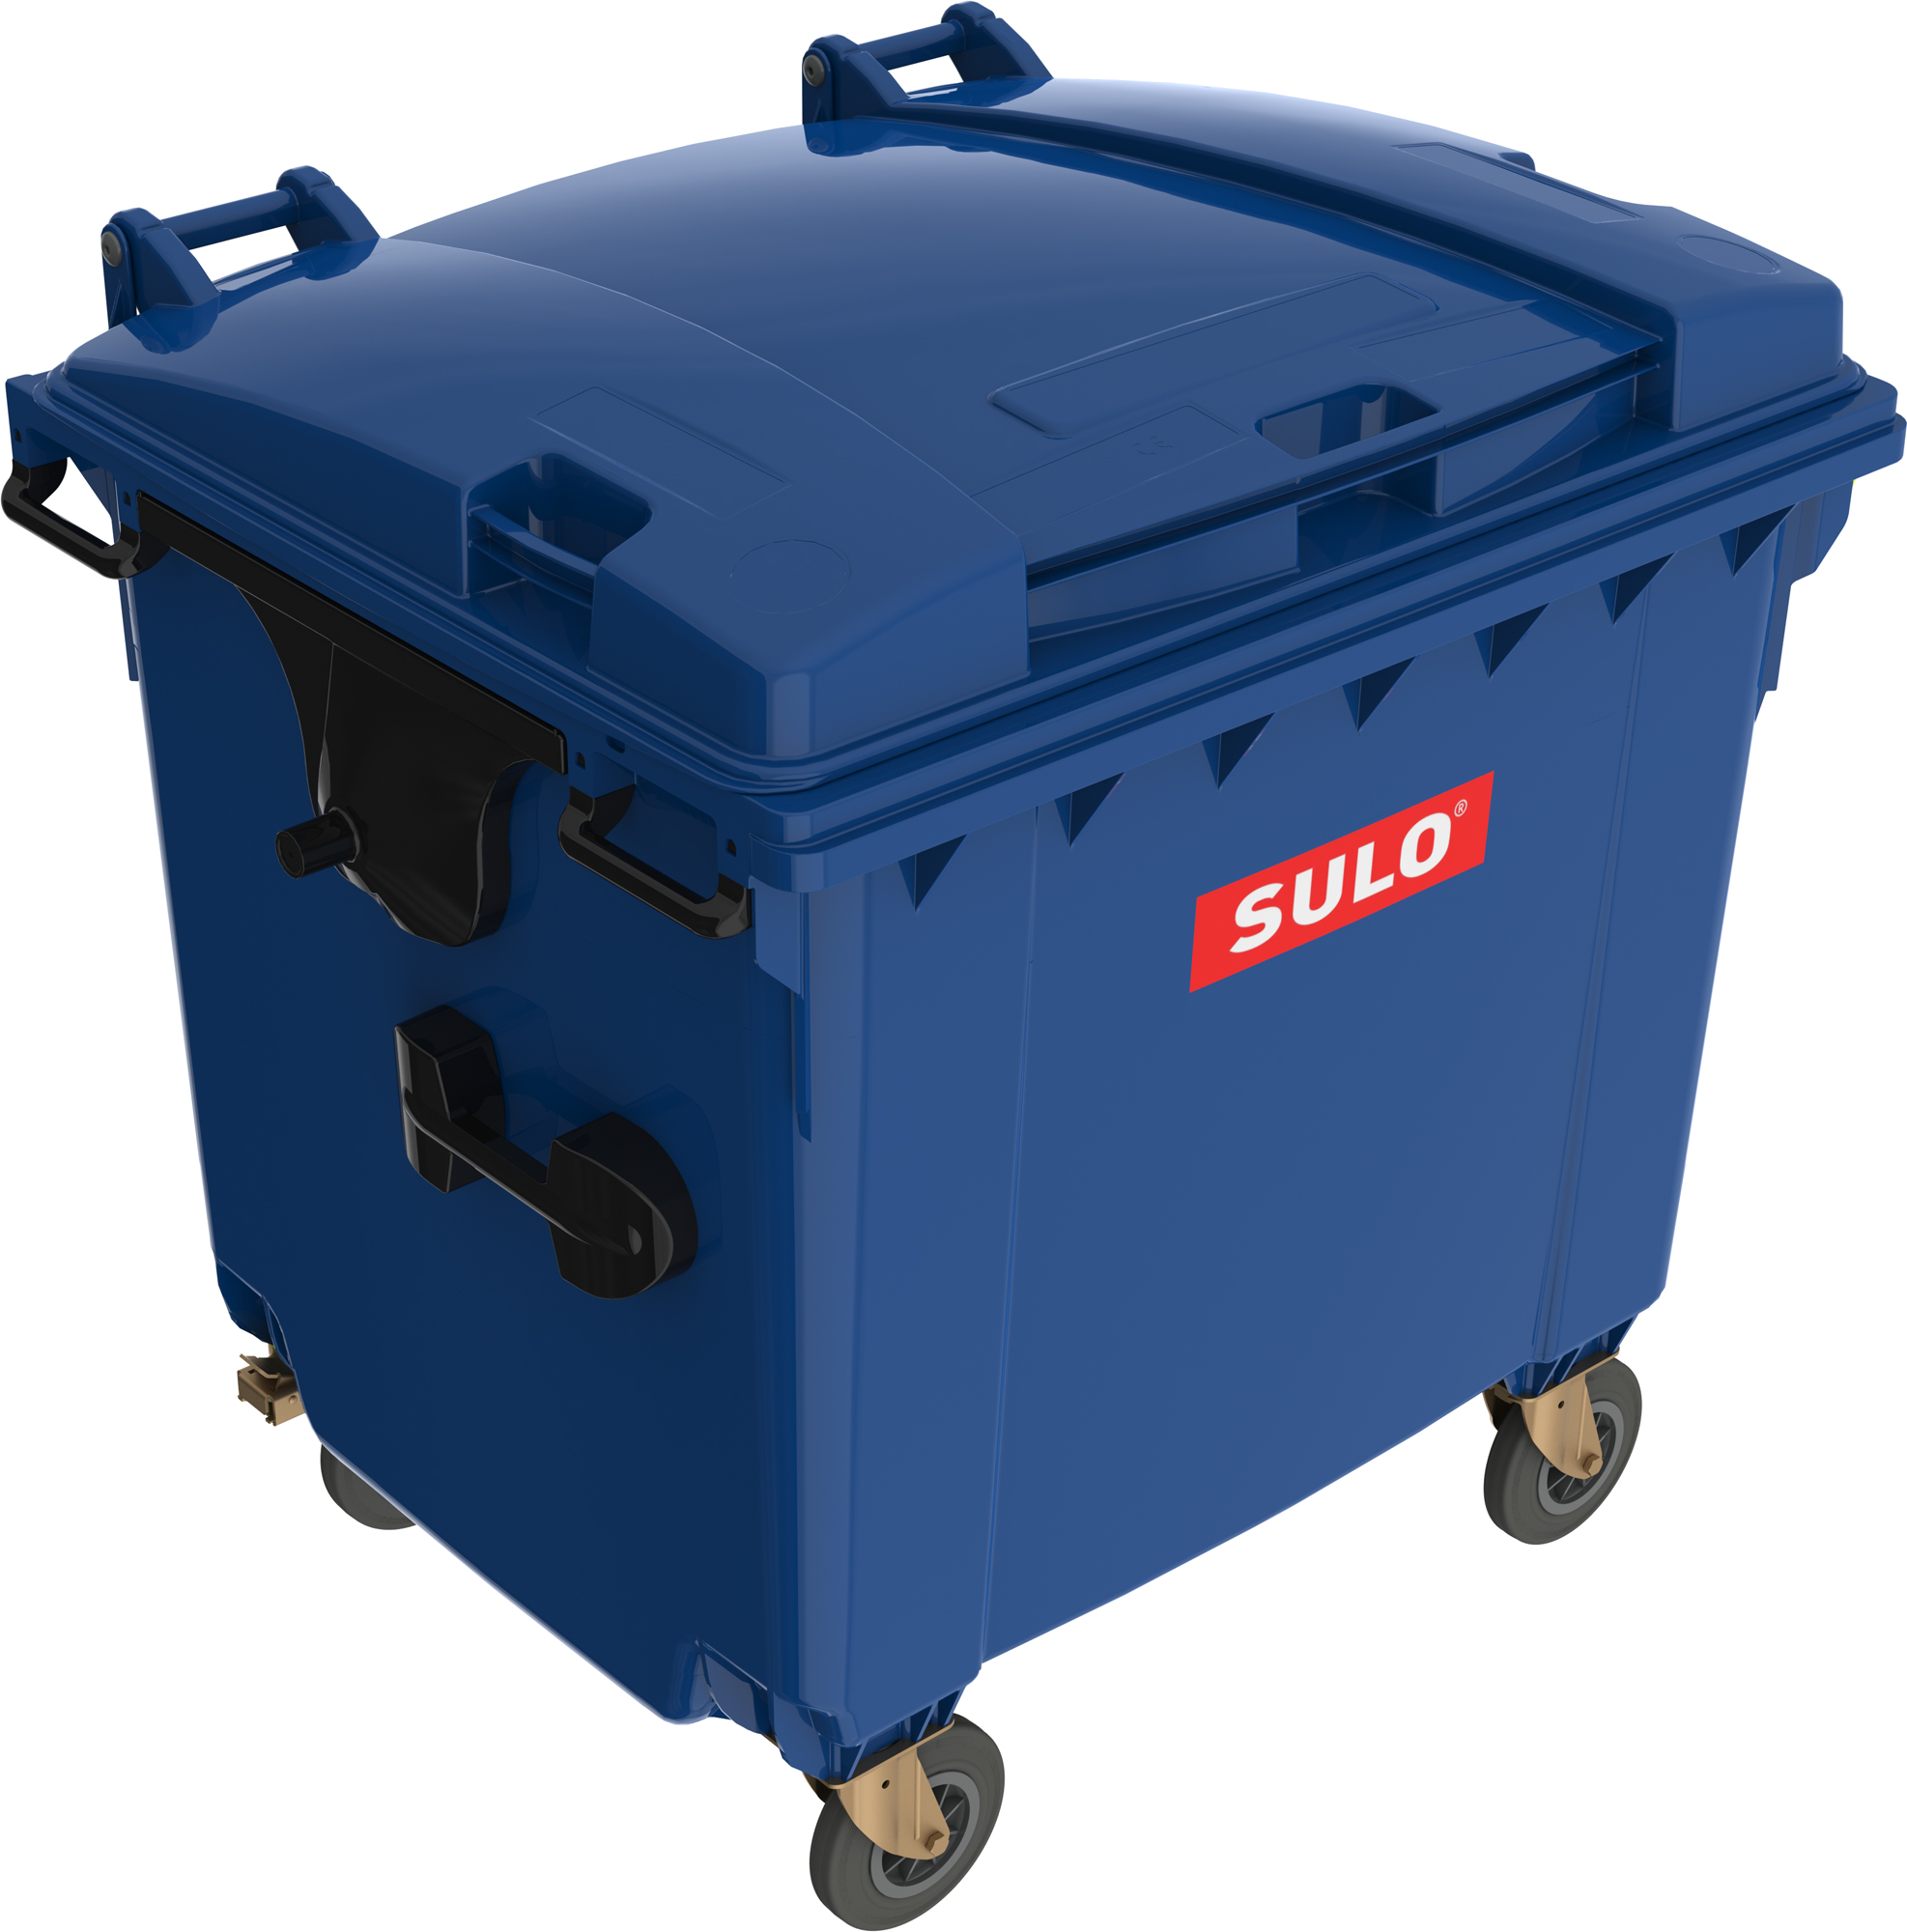 Eurocontainer din material plastic 1100 l albastru cu capac plat MEVATEC – Transport Inclus sanito.ro